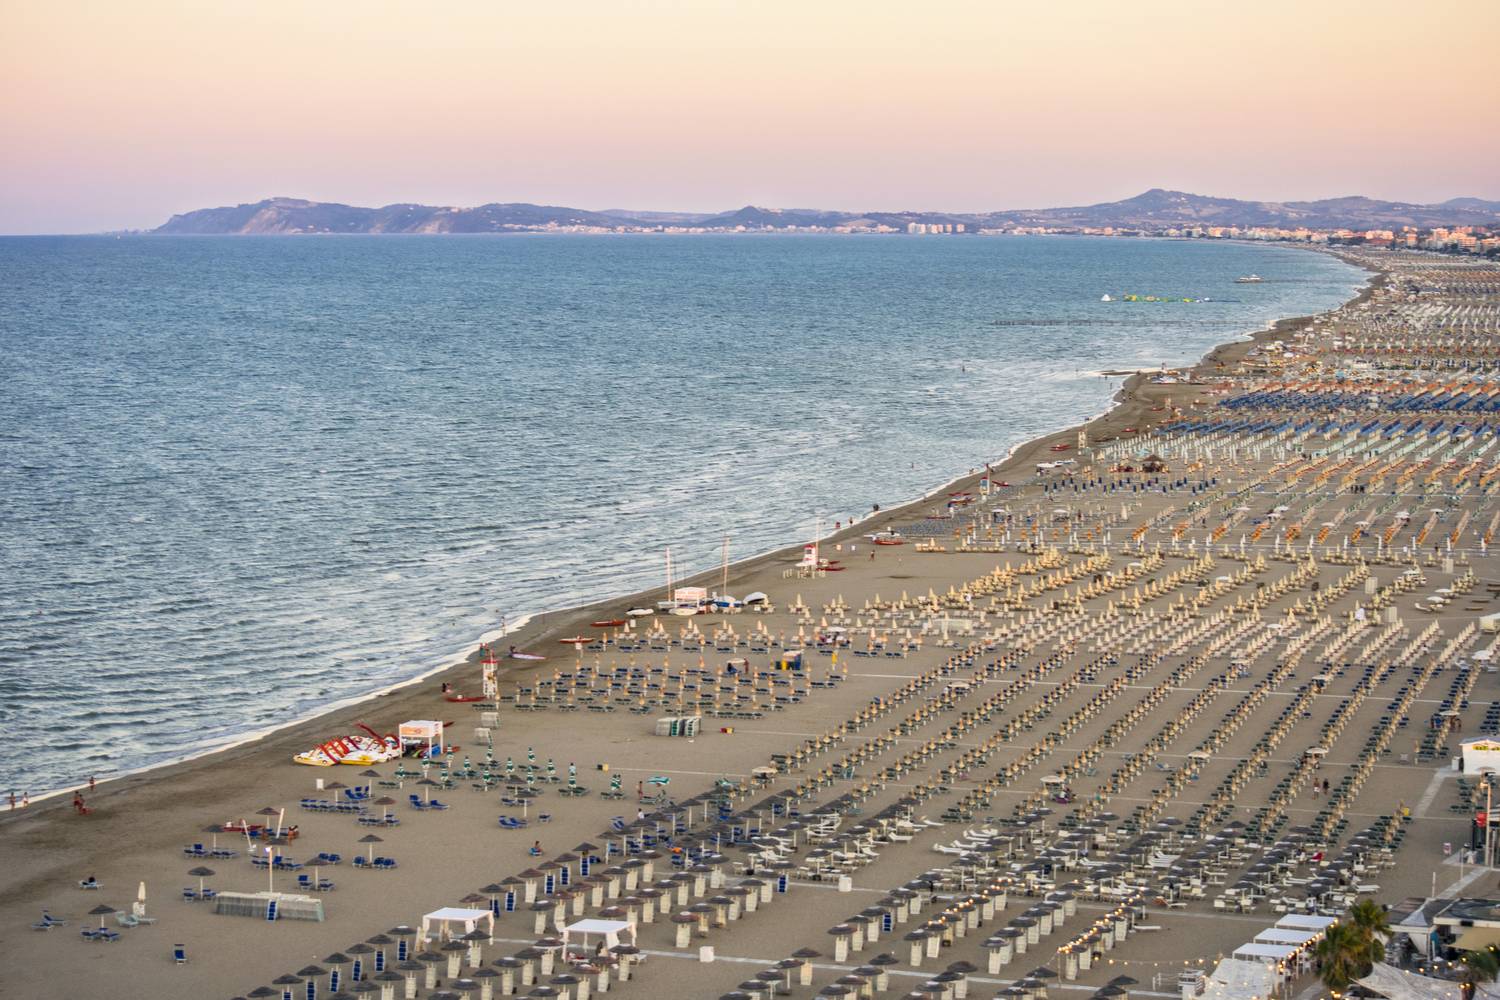 Riminit a legtöbben végeláthatatlan, homokos tengerpartja miatt veszik bakancslistára, ahol igazi üdülőparadicsom működik szállodákkal, éttermekkel.